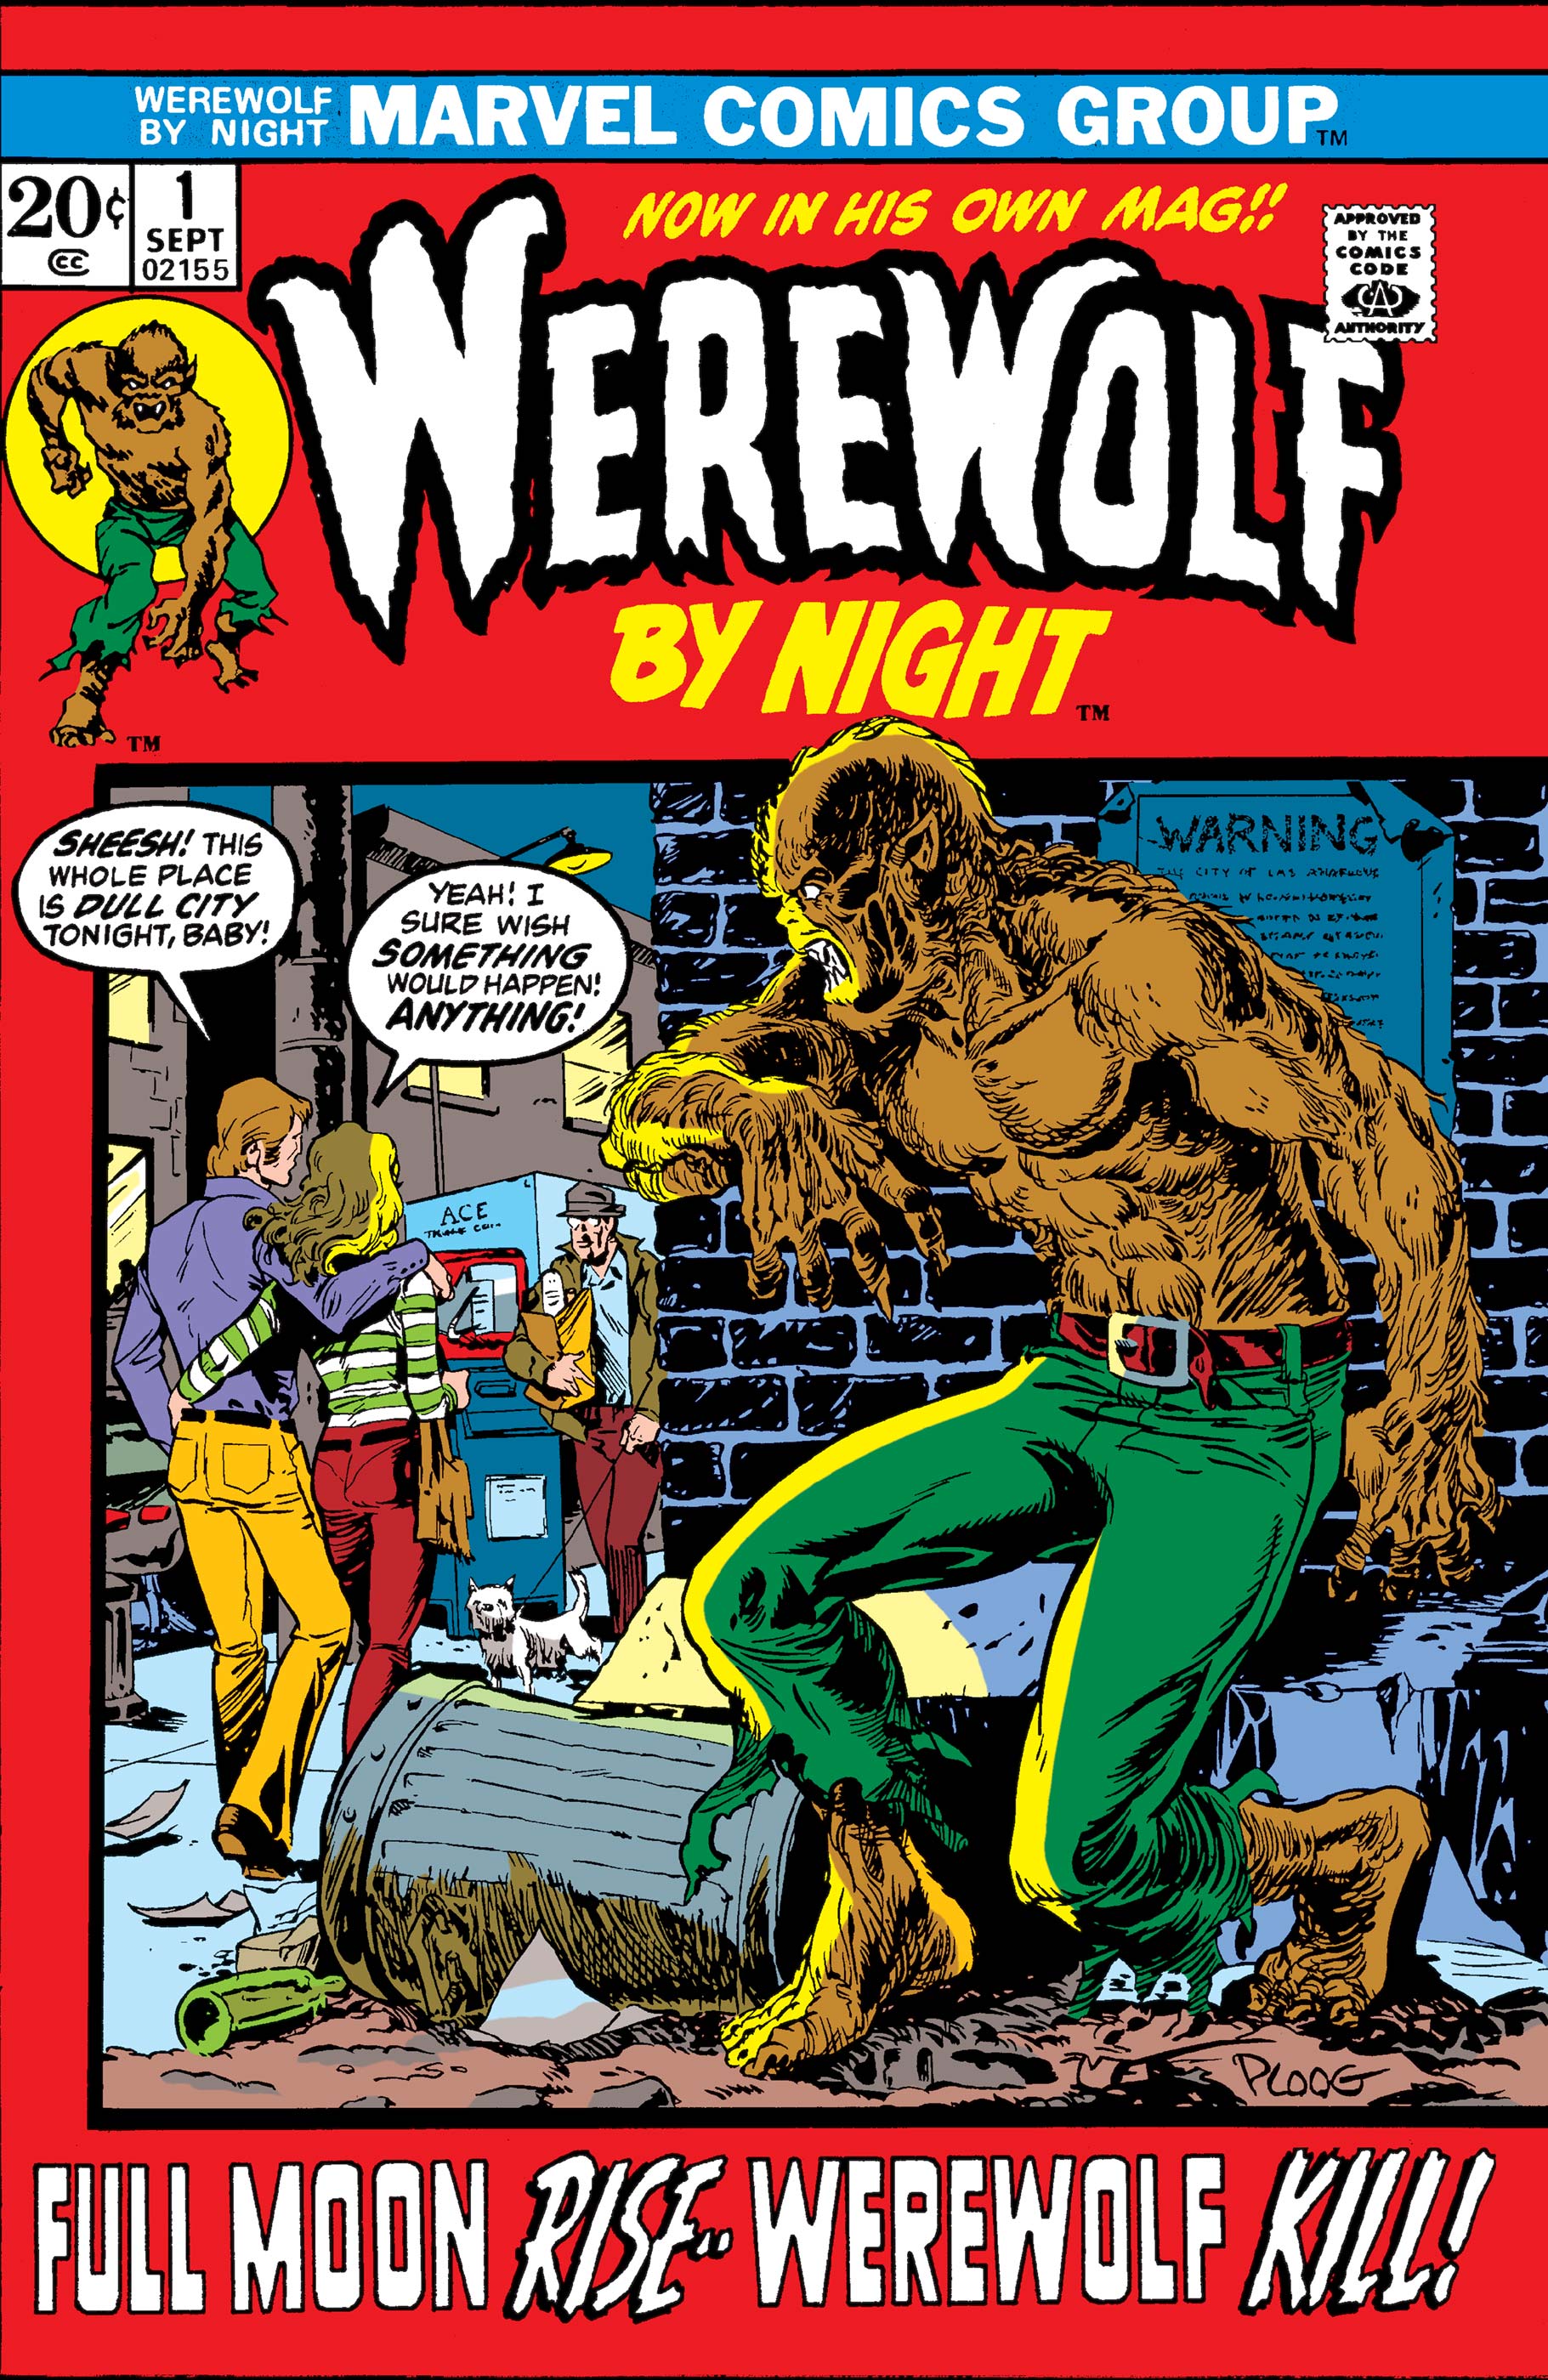 Werewolf by night poster 